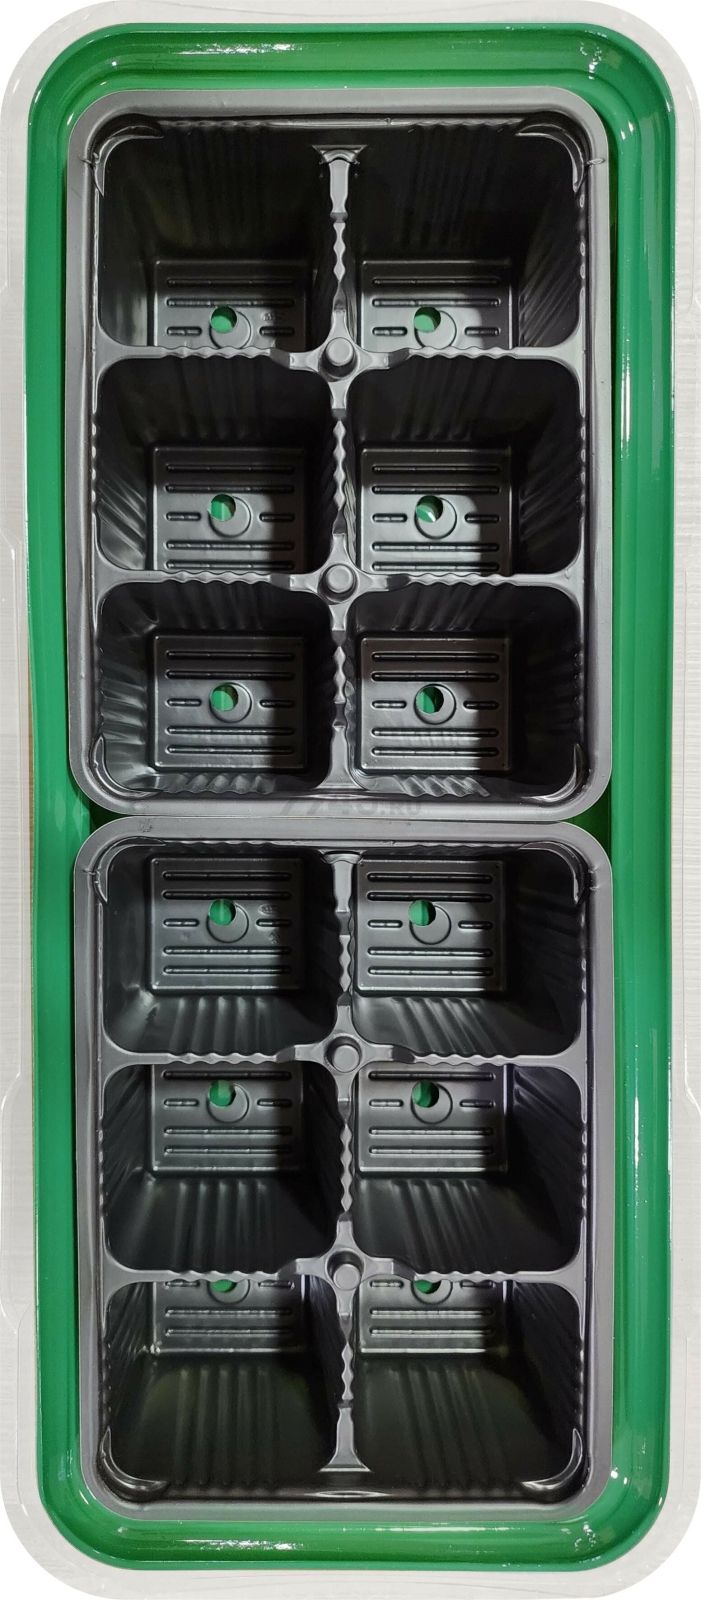 Мини-парник пластмассовый 12 ячеек INGREEN зеленый (ING60001F) - Фото 2